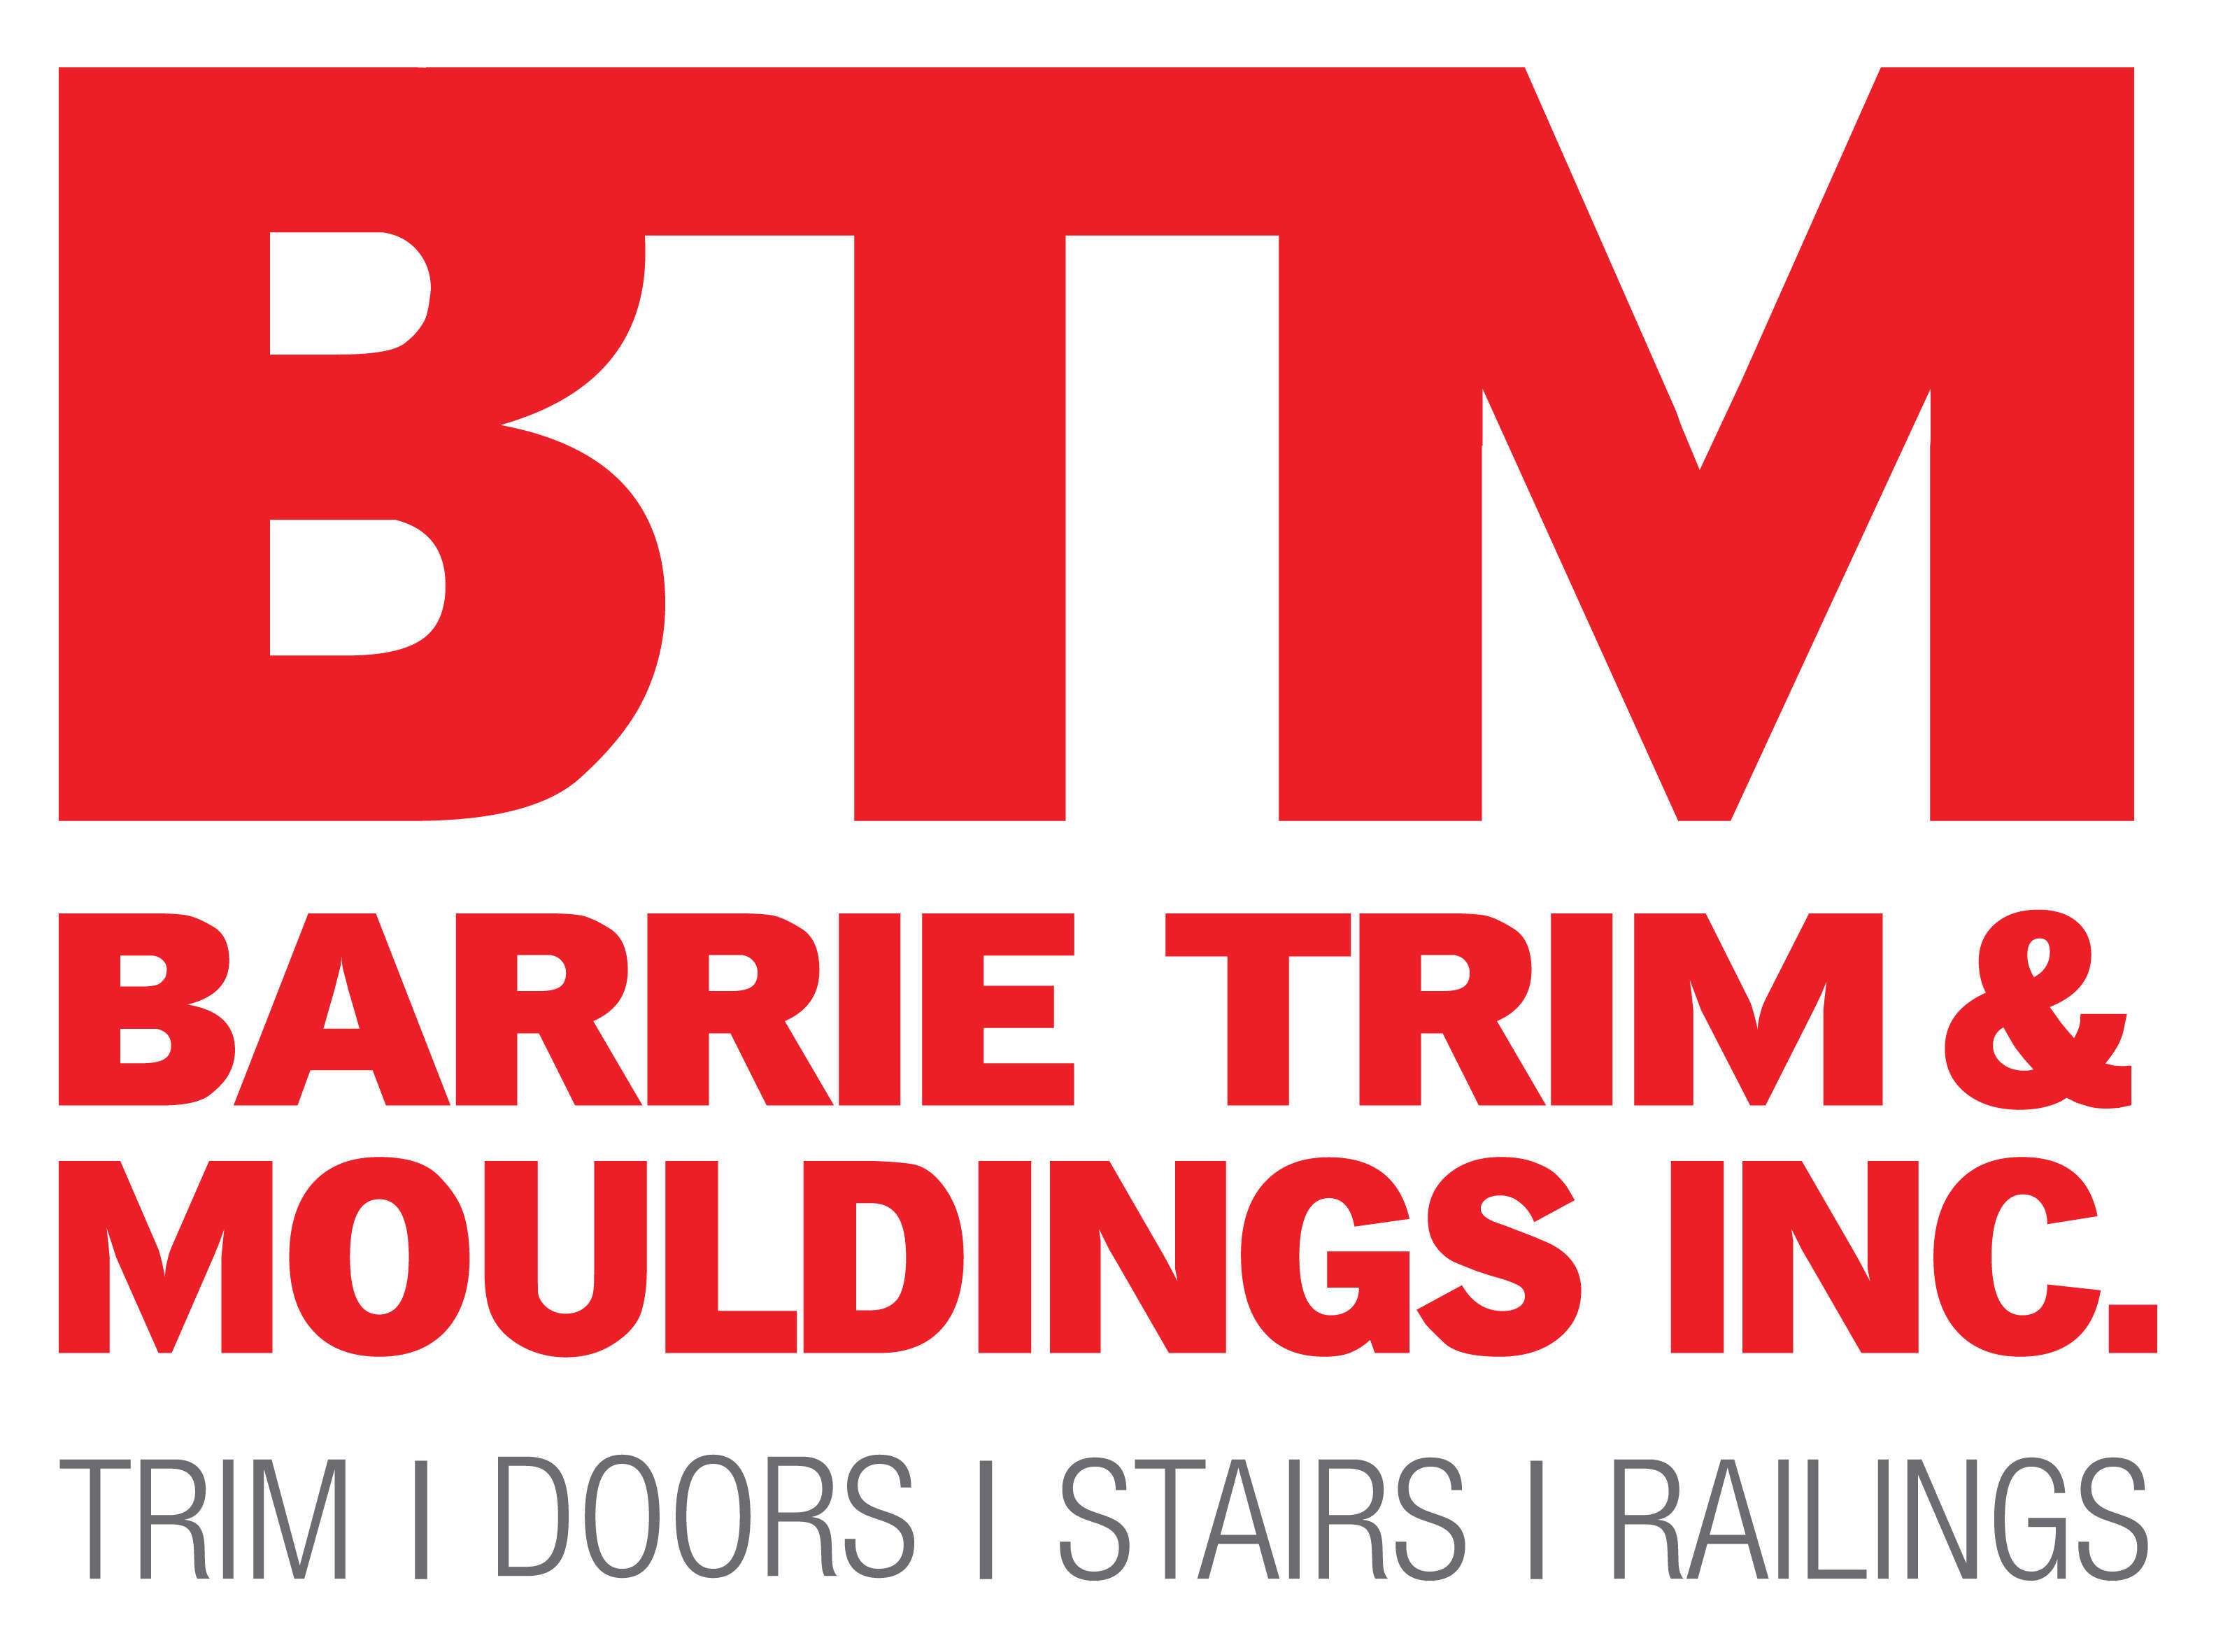 Barrie Trim & Mouldings Inc